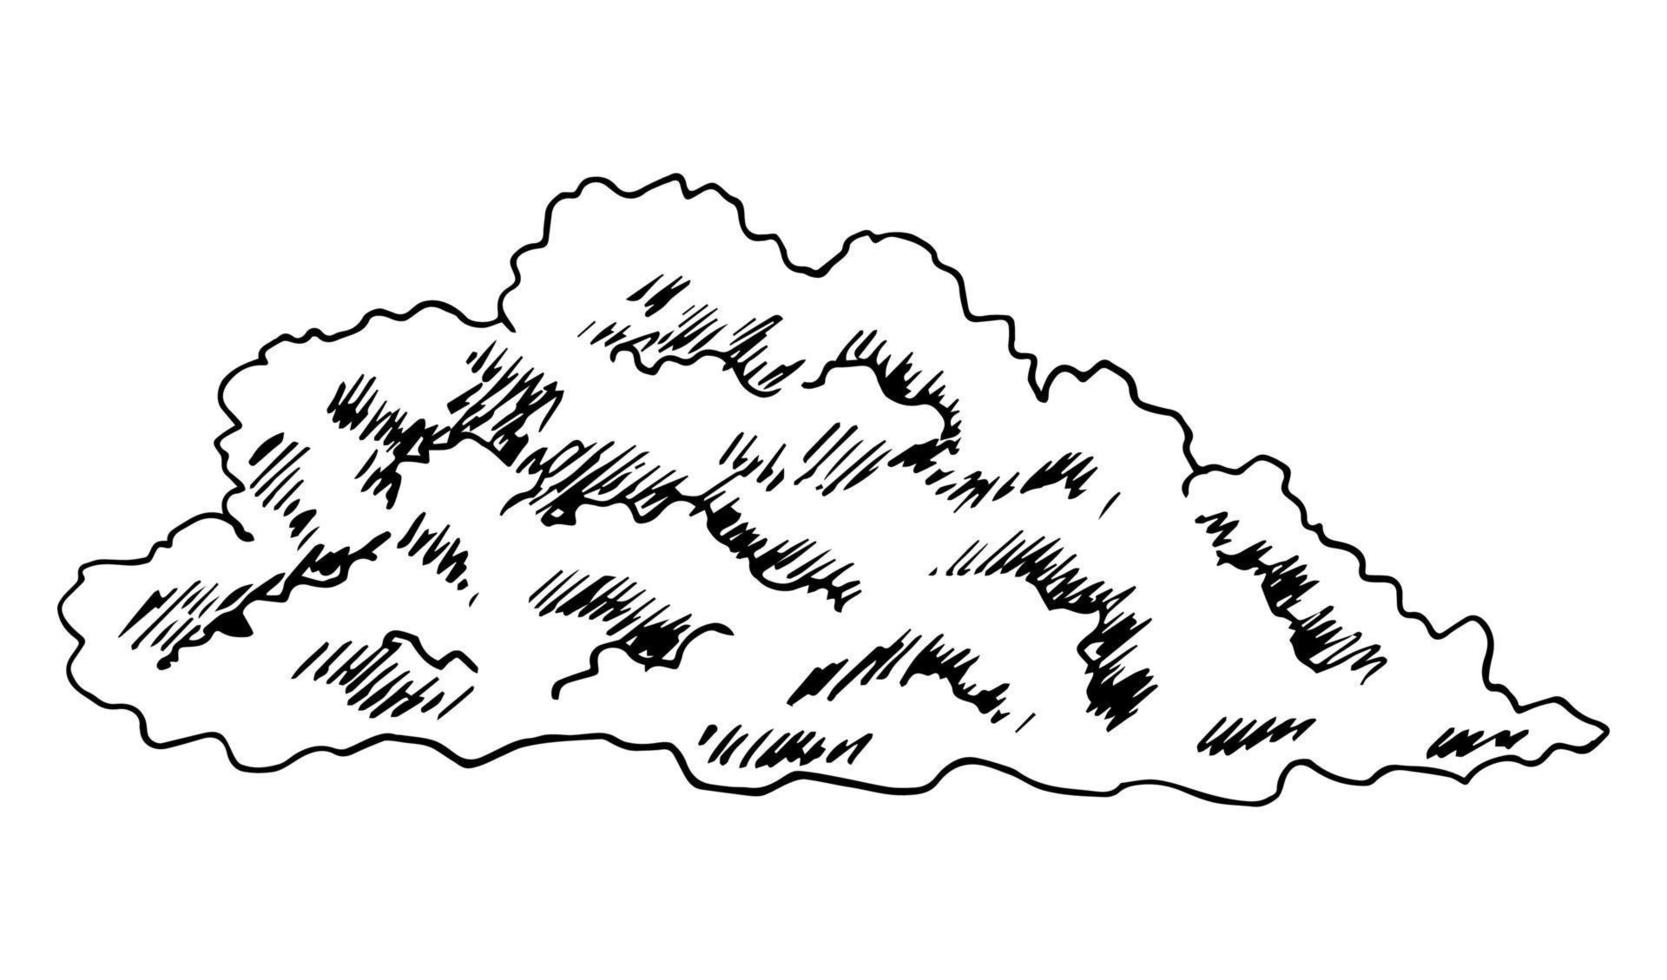 handgezeichnete Vektortintenzeichnung im Gravurstil. Gewitterwolke, Kumuluswolke, Sturm, windiges Wetter, Regenzeit. Klima, Luft, Natur. vektor